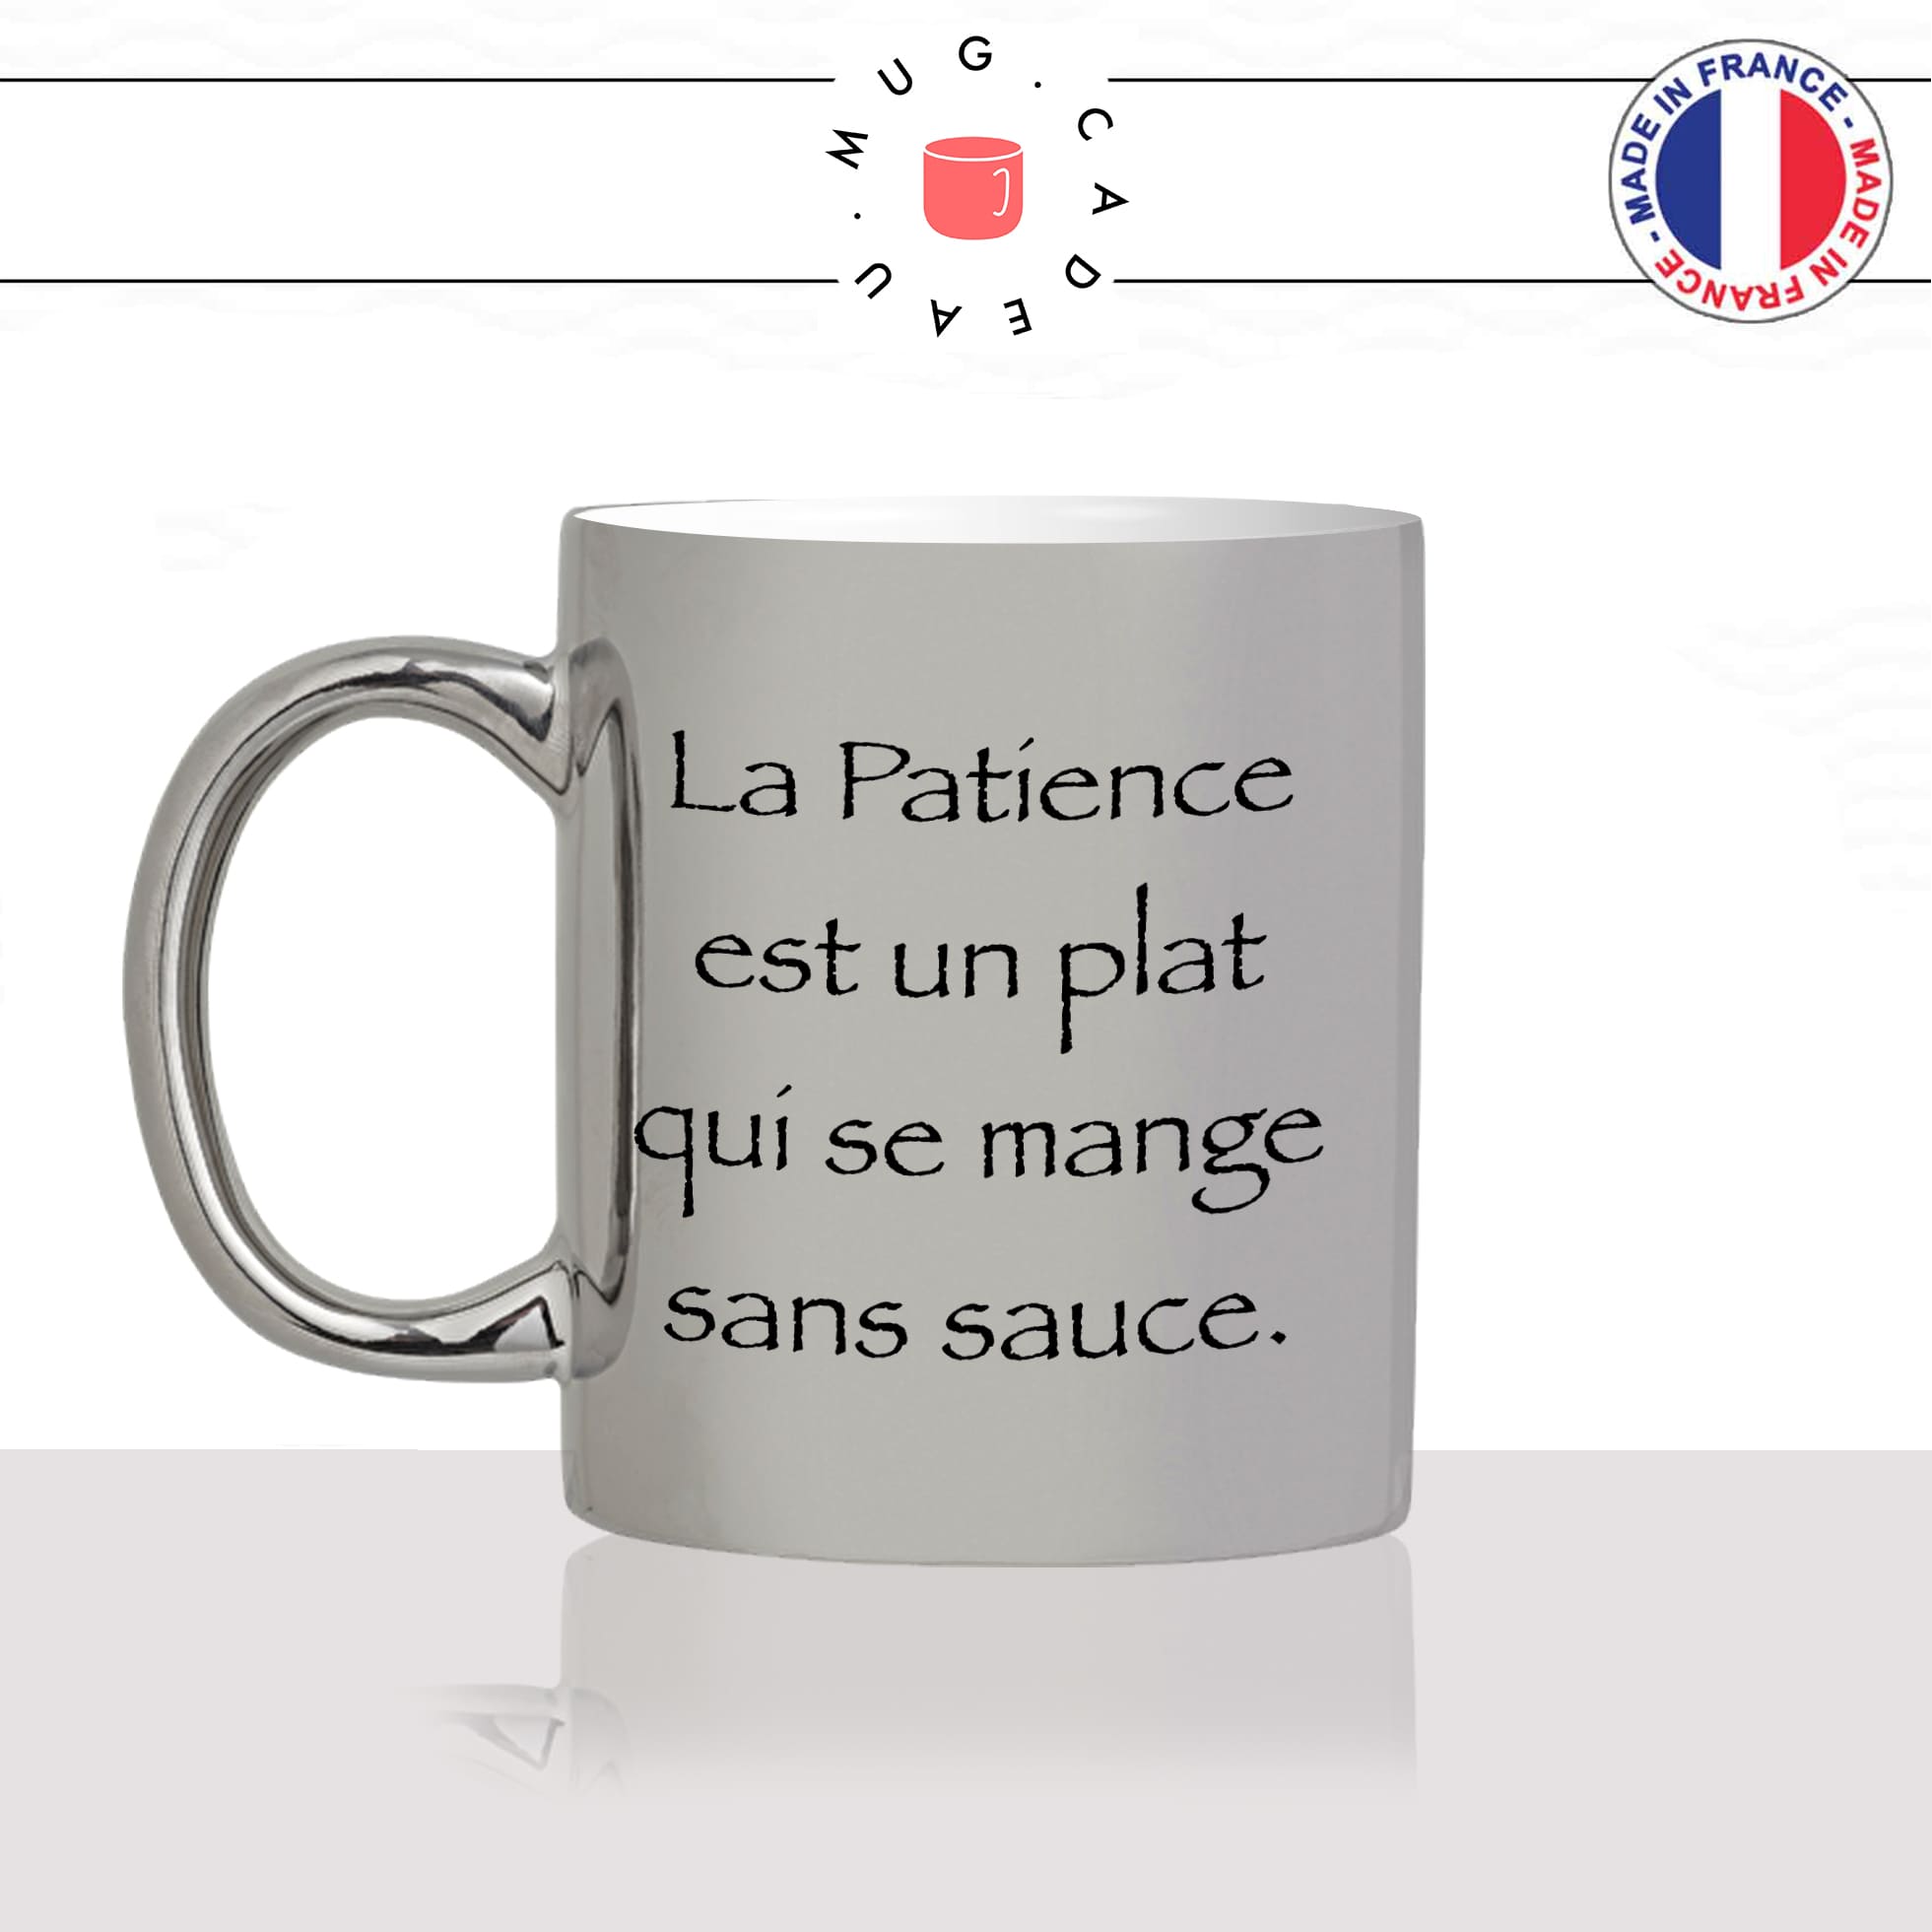 mug-tasse-argent-argenté-silver-série-francaise-culte-kaamelott-arthur-la-patience-perceval-humour-télé-idée-cadeau-fun-cool-café-thé